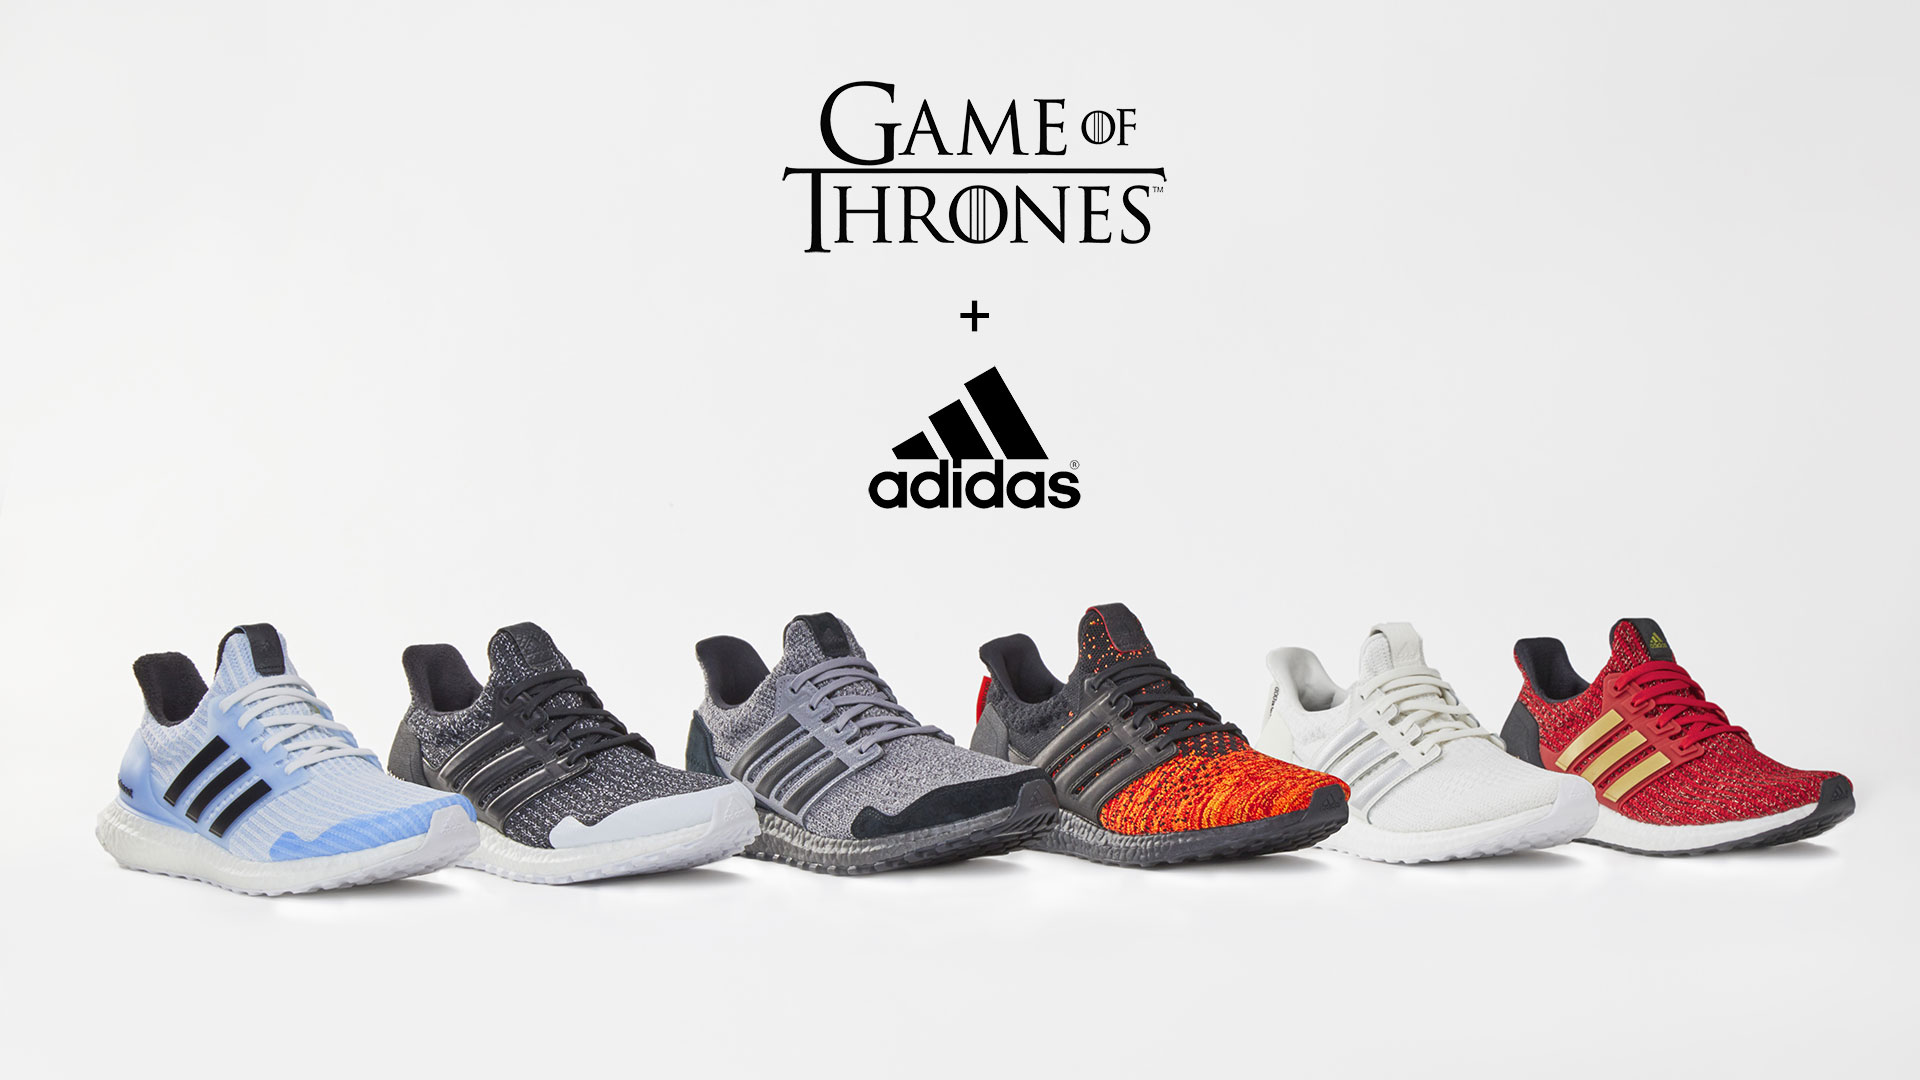 Los 6 modelos de Adidas Game Of Thrones